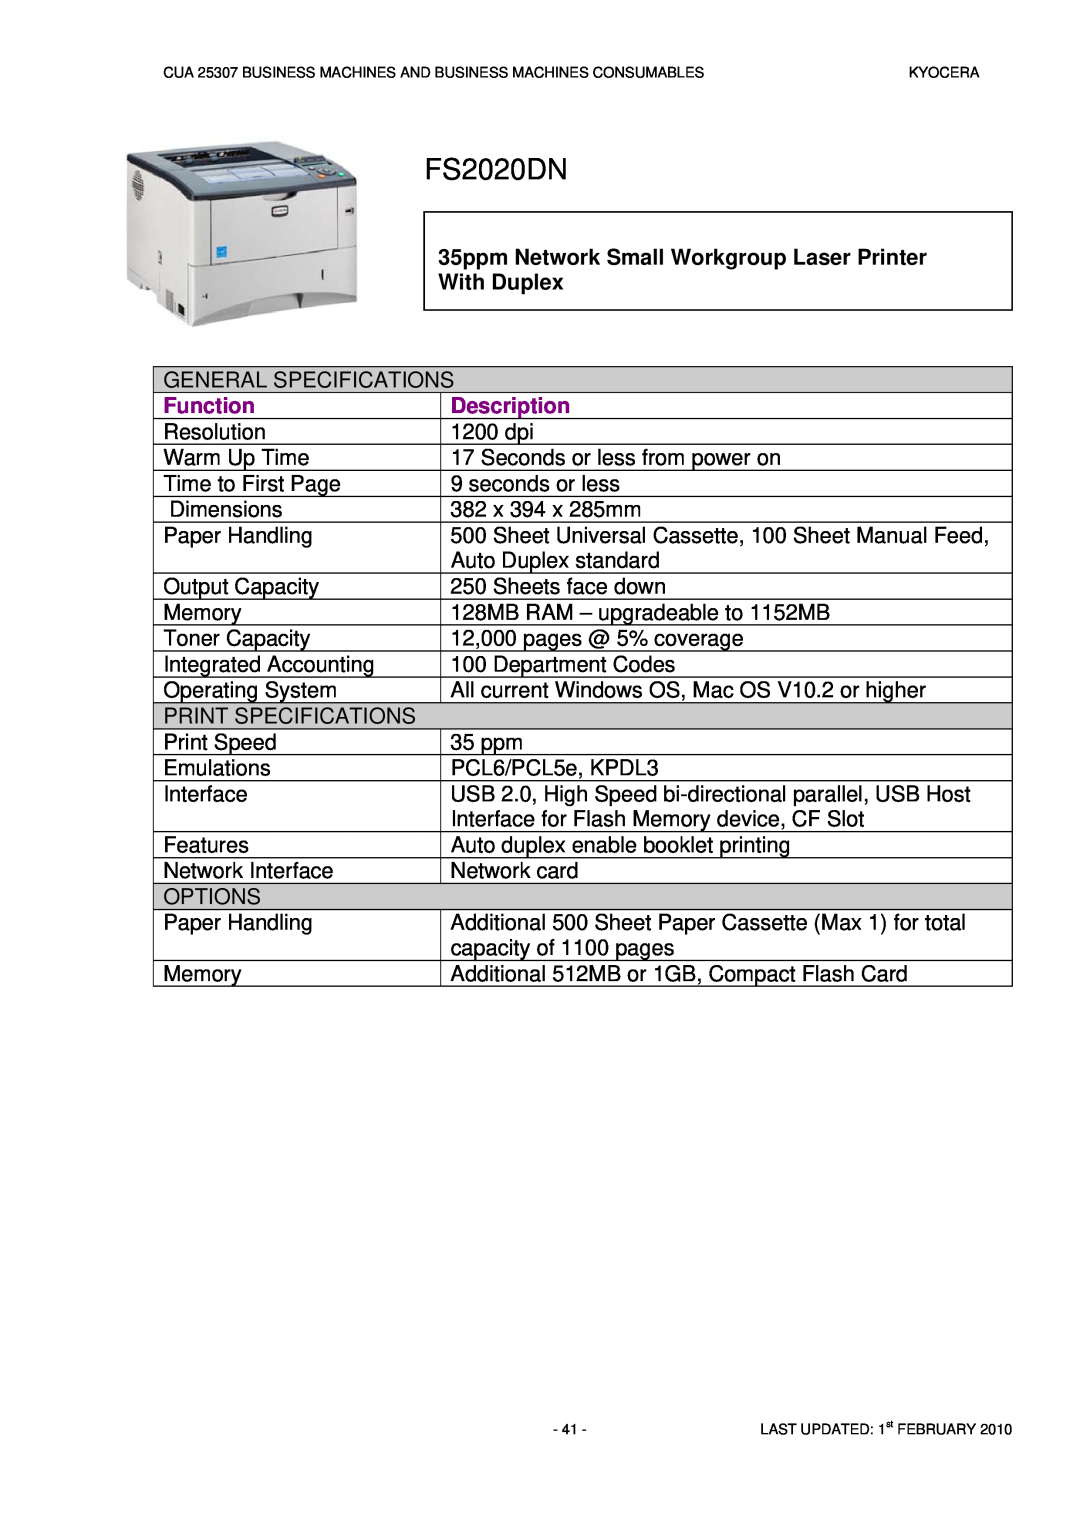 Kyocera CUA 25307 manual FS2020DN, Function, Description 1200 dpi 